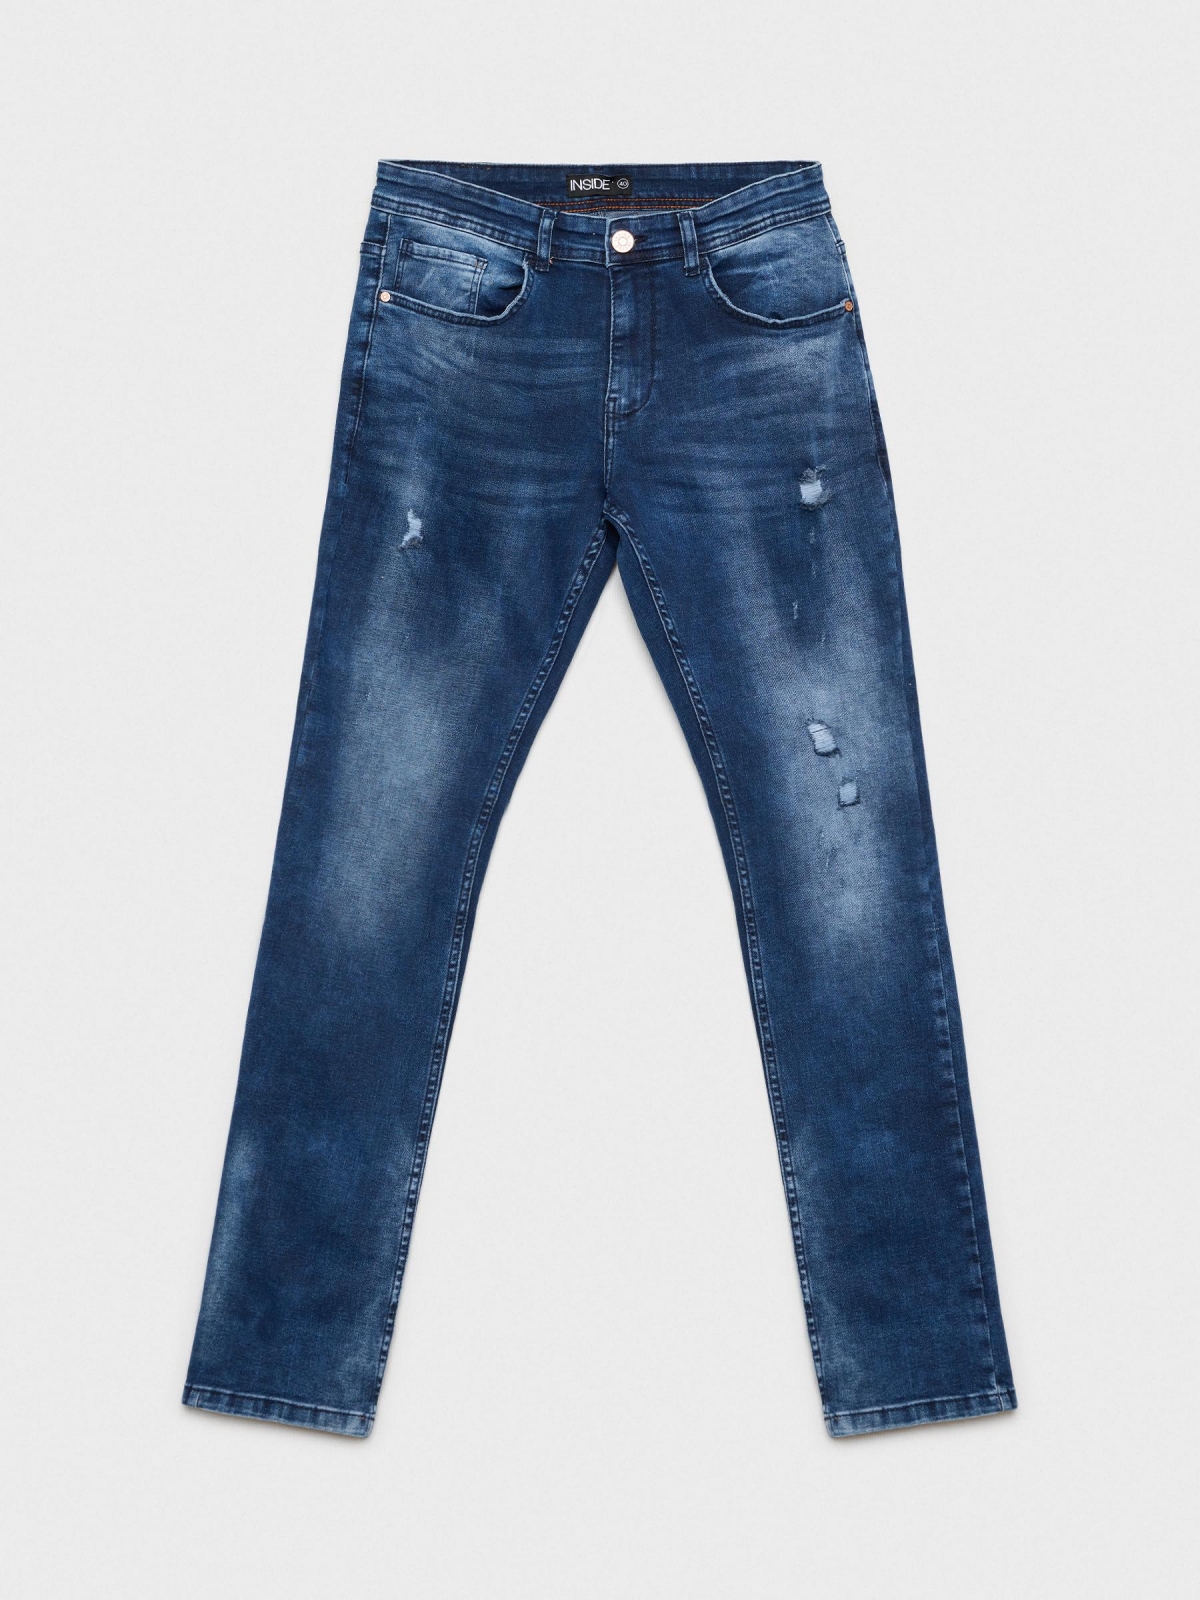  Jeans slim desgastado com rasgos azul marinho